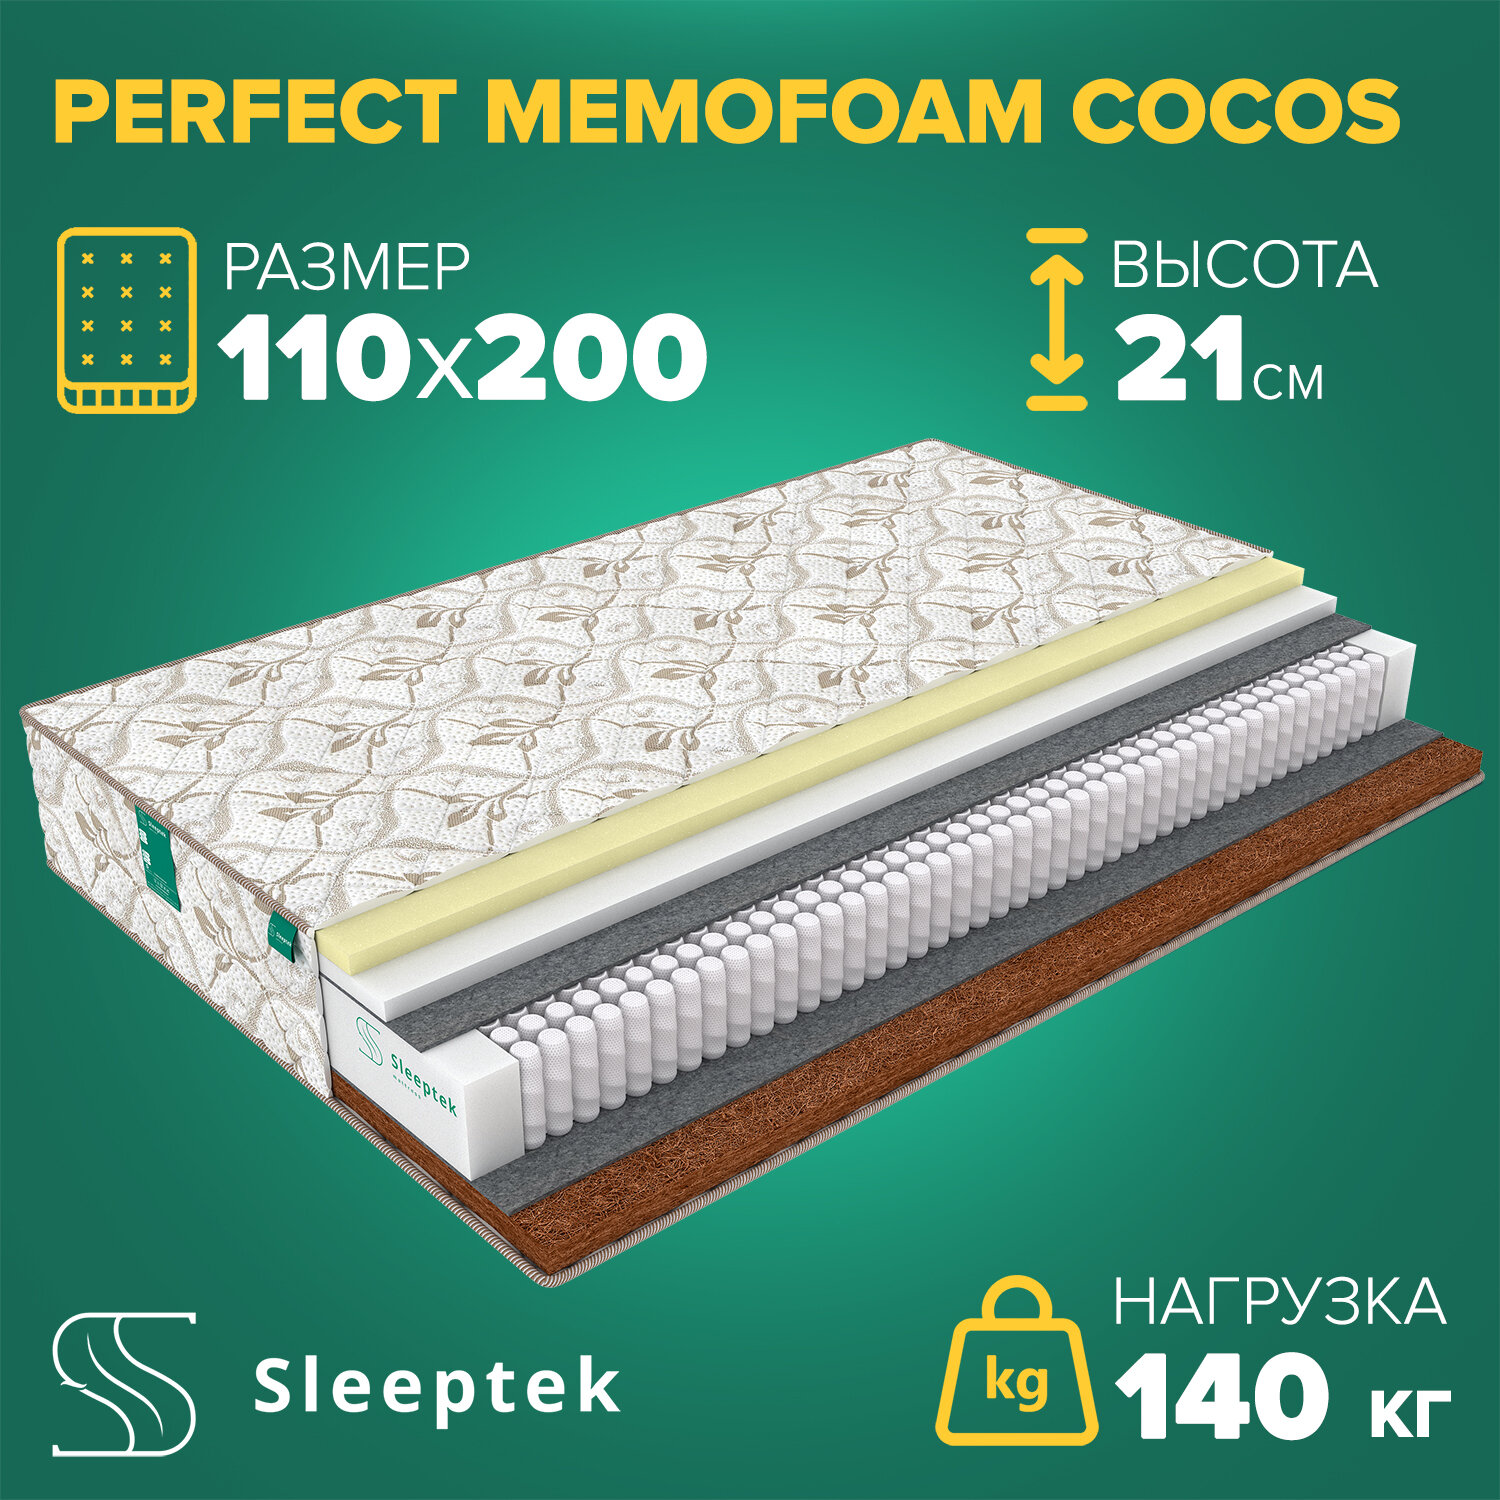  Sleeptek Perfect MemoFoam Cocos, 110200 